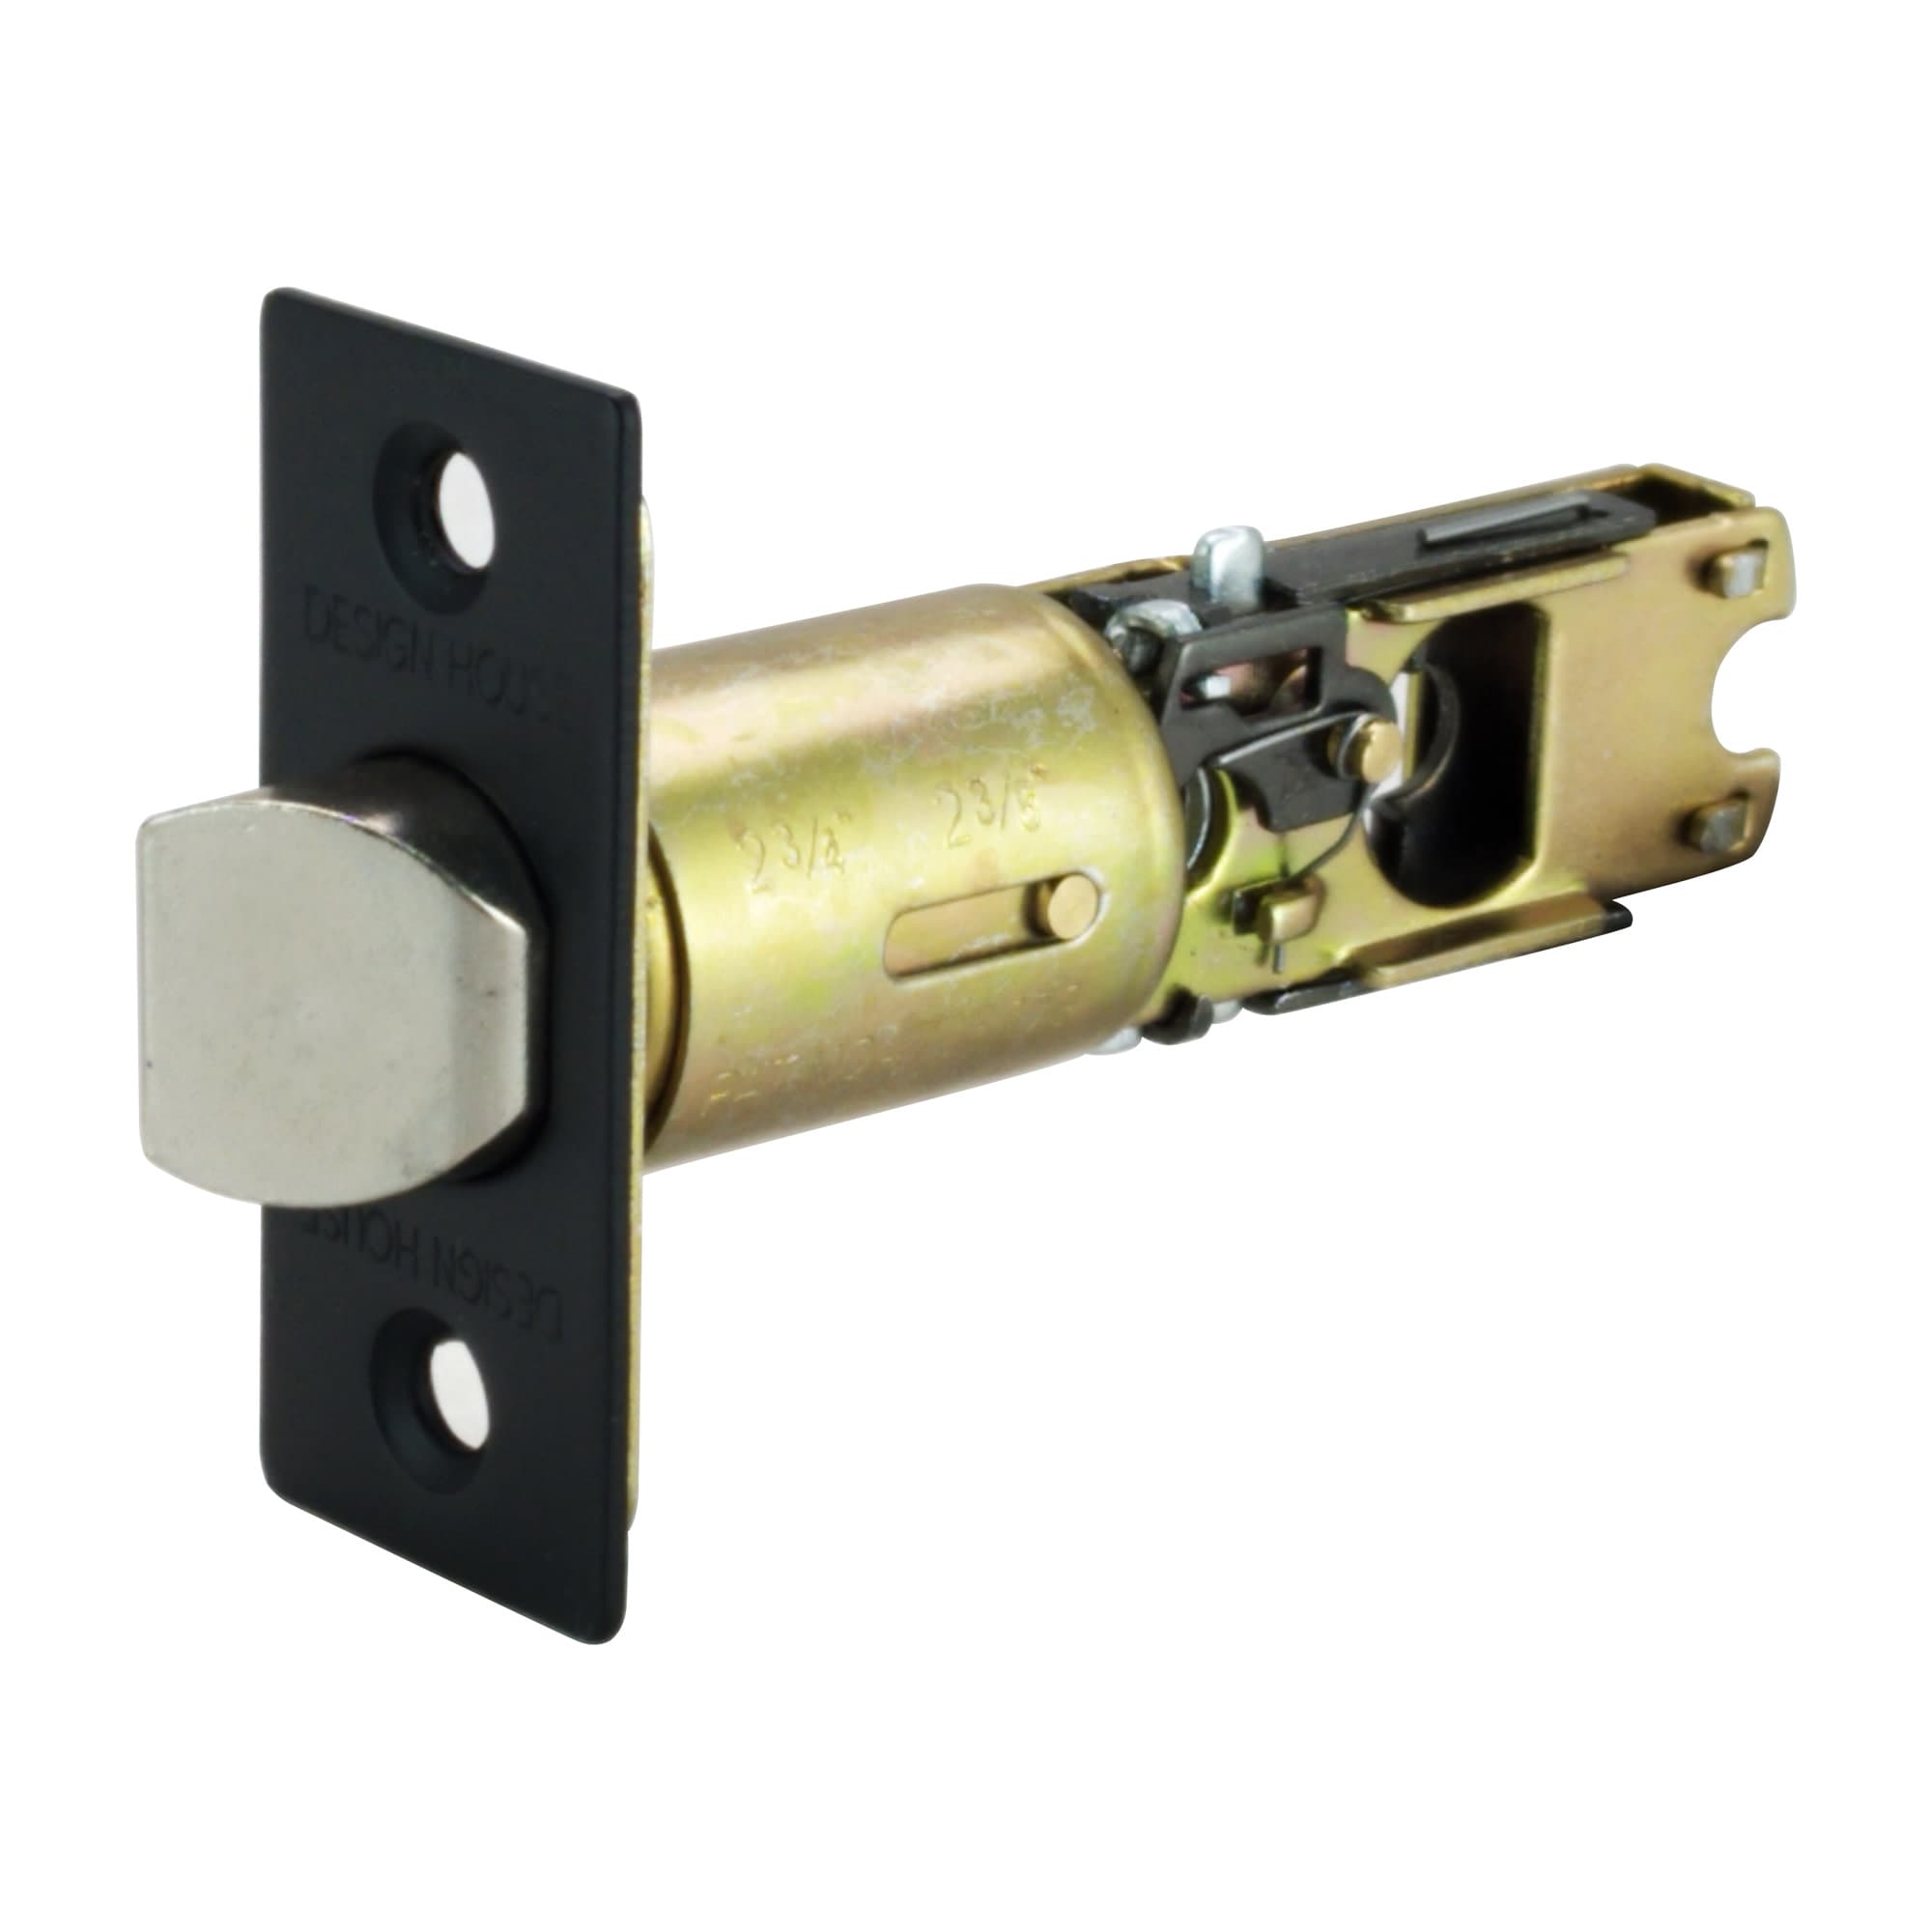 Security Raids Lockable Security Raids Door Lock Fastener Buckle Device Cabinet  Lock With Key For Doors Wooden Box Garage Door 